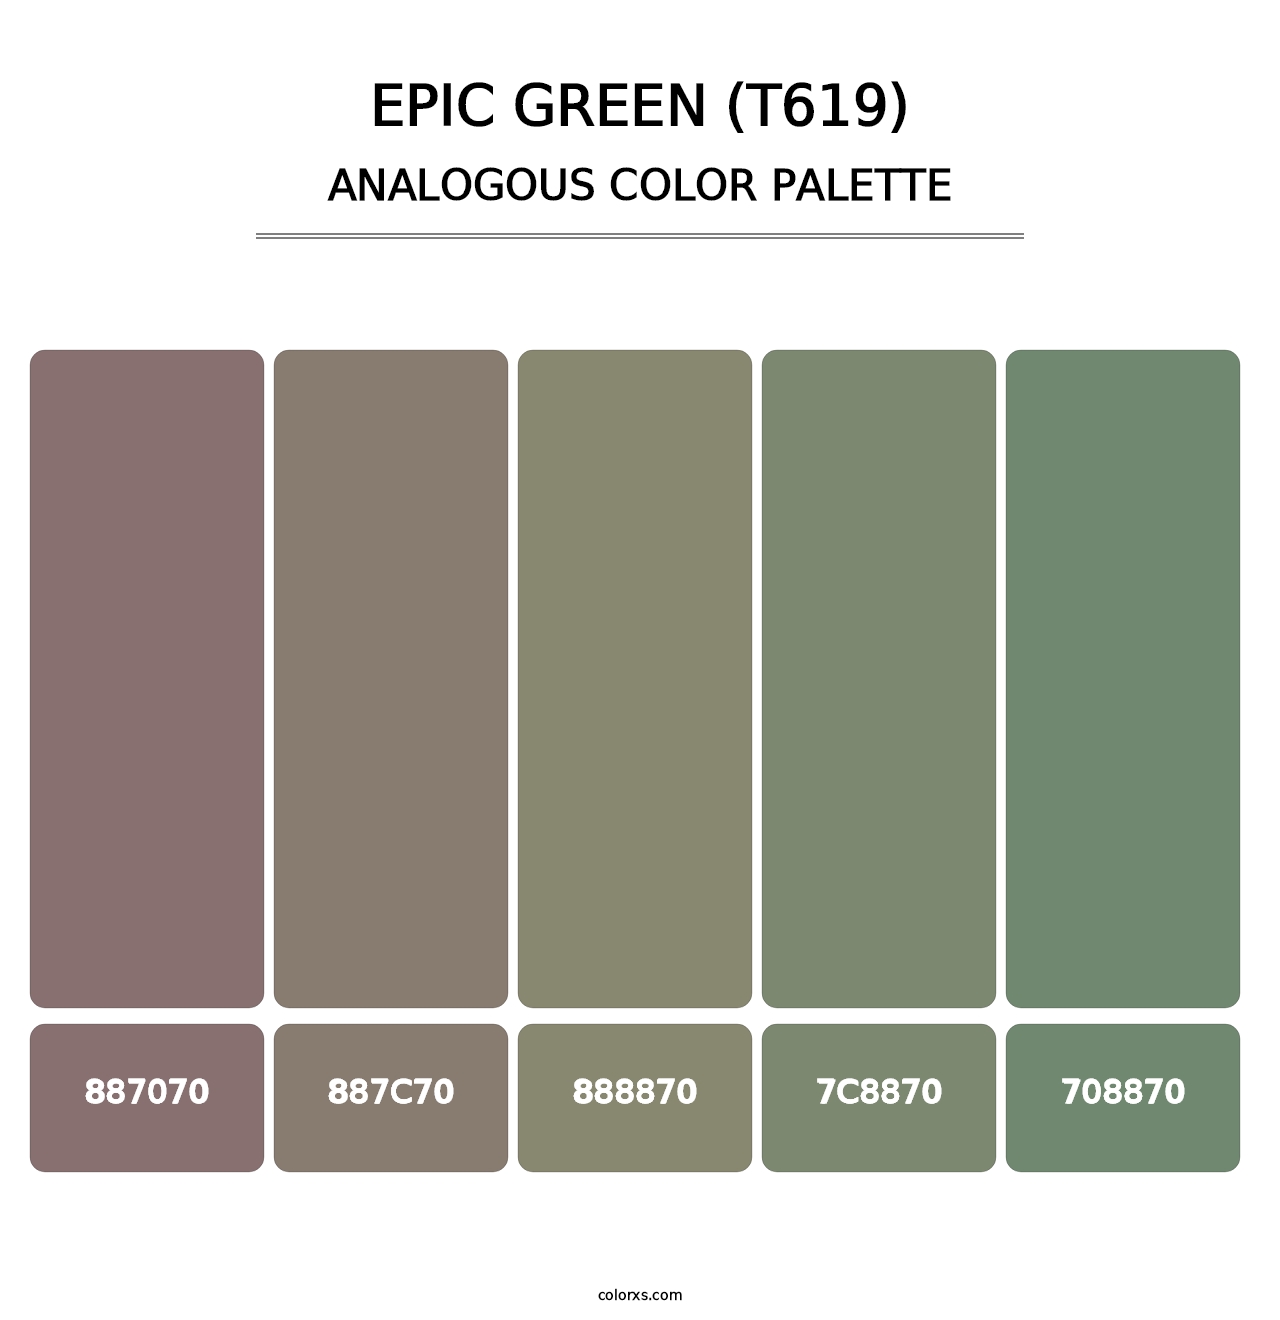 Epic Green (T619) - Analogous Color Palette